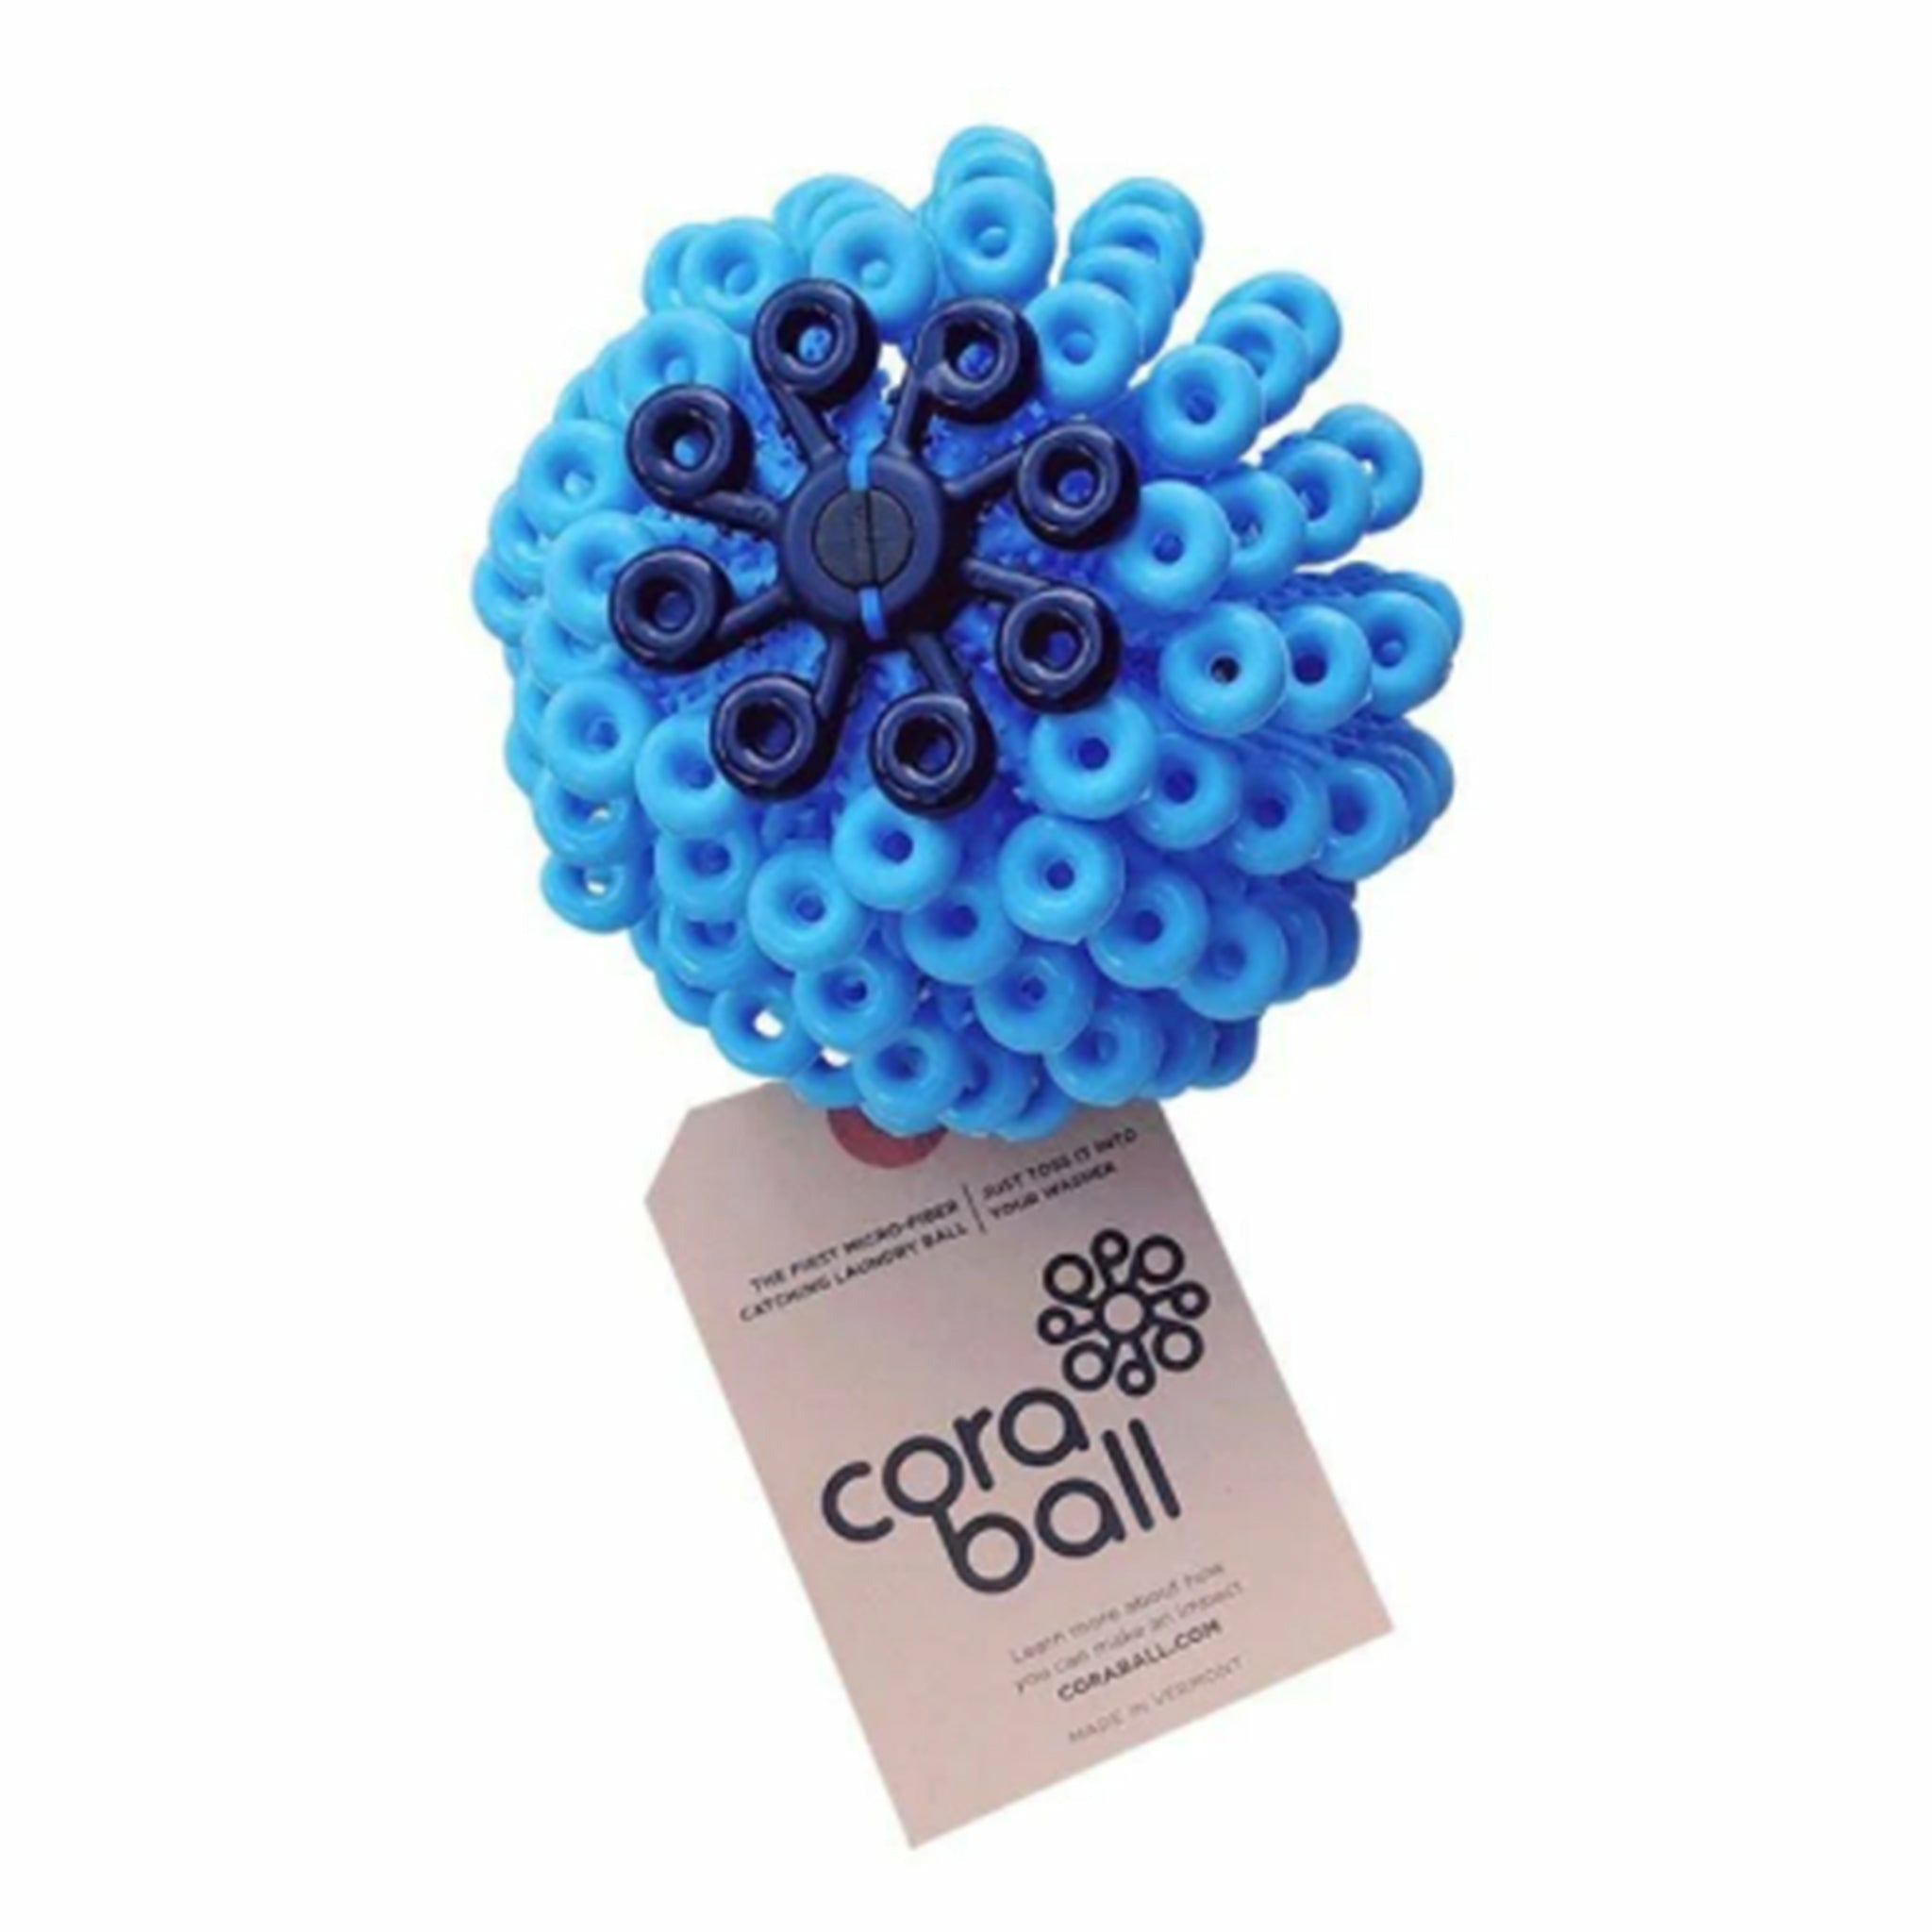 Cora Ball - Do Good Swimwear